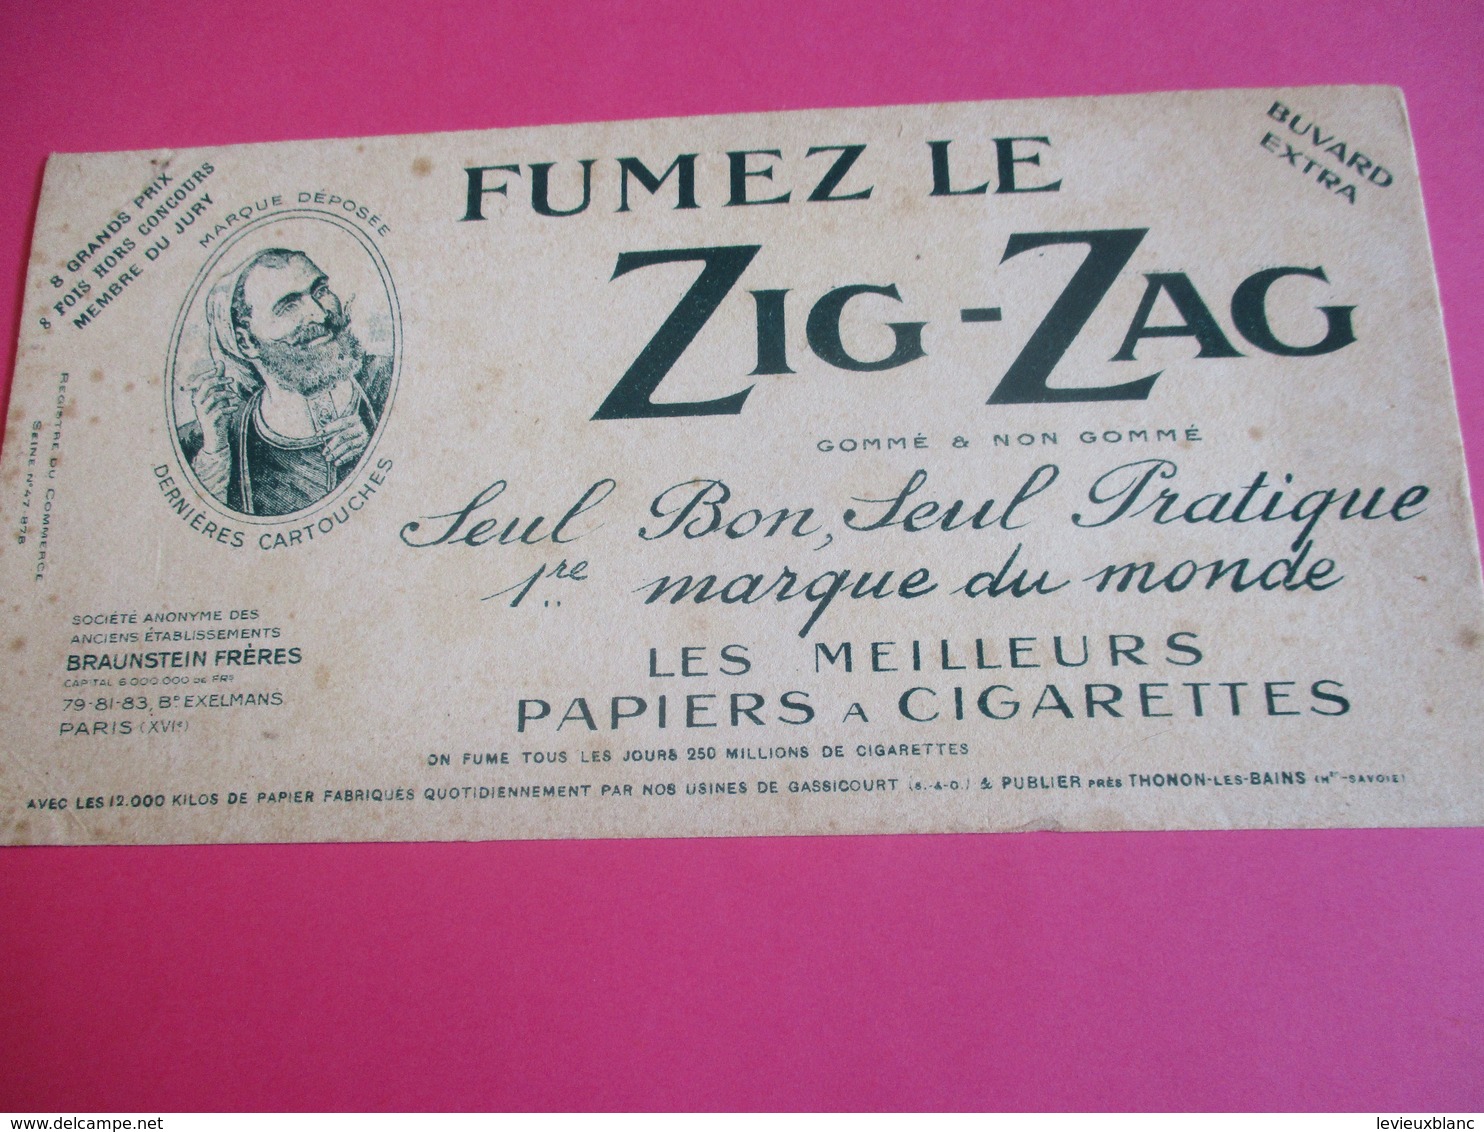 Buvard Extra/ Papier à Cigarette/ ZIG-ZAG/Fumez Le Zig-zag/1ére Marque Du Monde/Braunstein Fréres /1930-1950   BUV290 - Tobacco